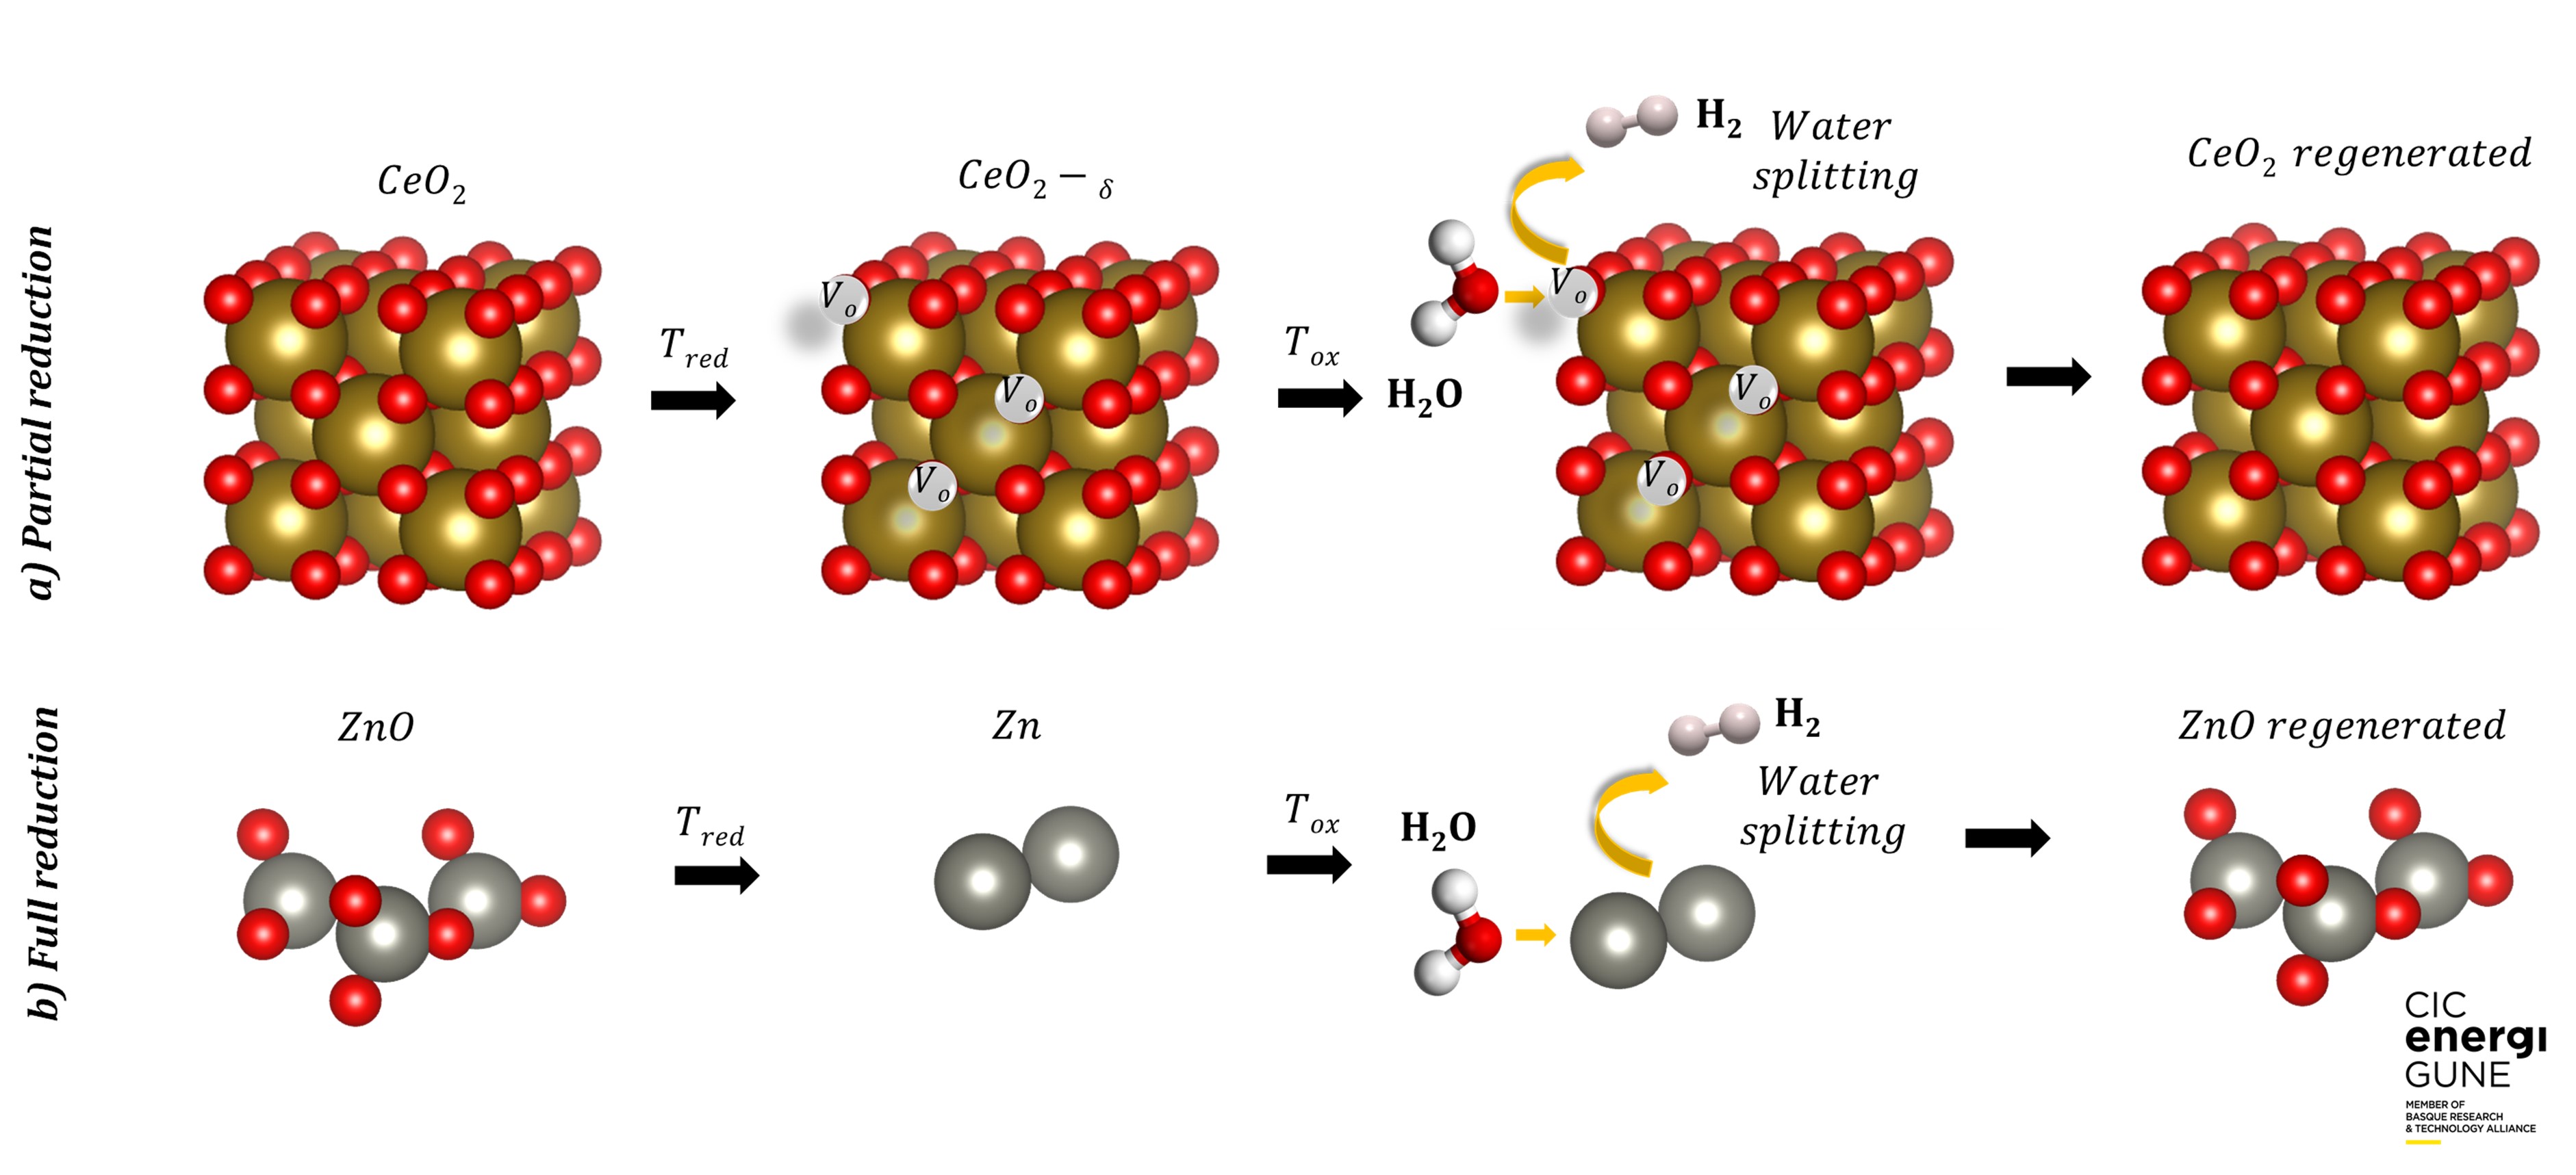 Figura 2.  Vías de reacción en la división termoquímica del agua en dos pasos para la producción de H2.